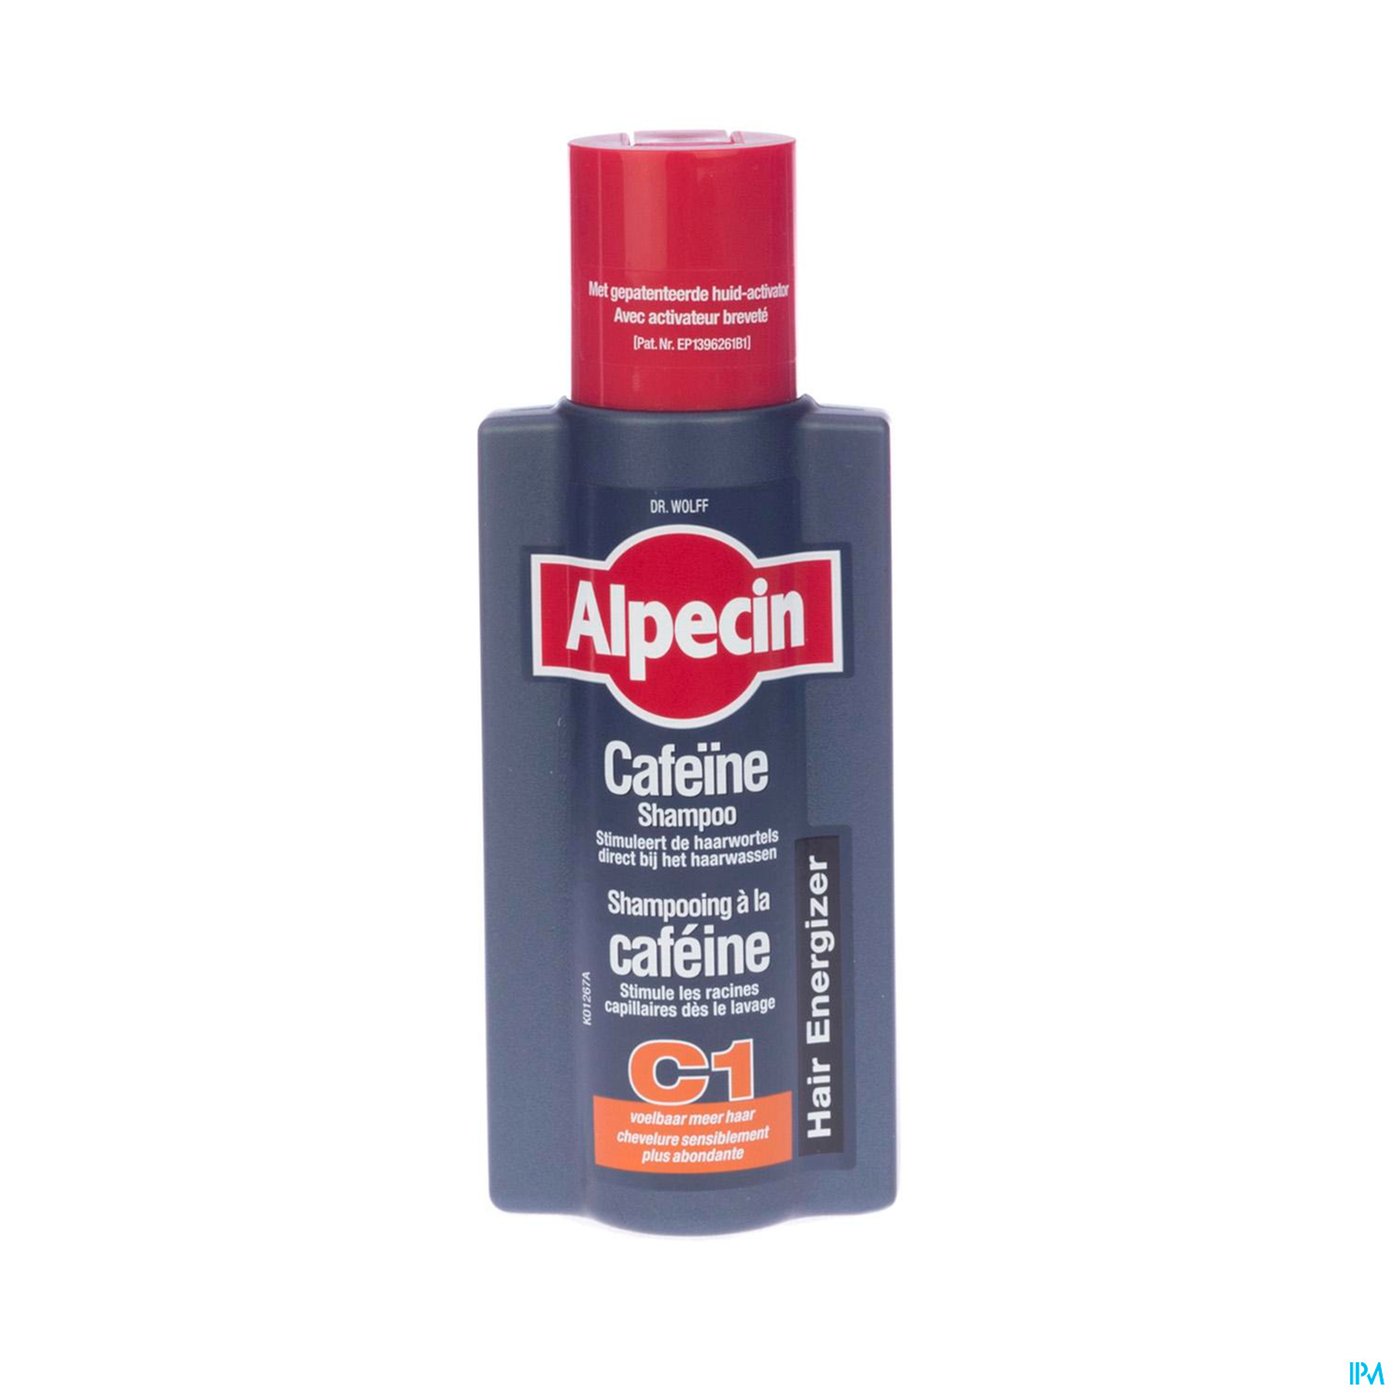 Alpecin Caffeine Shampoo C1 250ml packshot